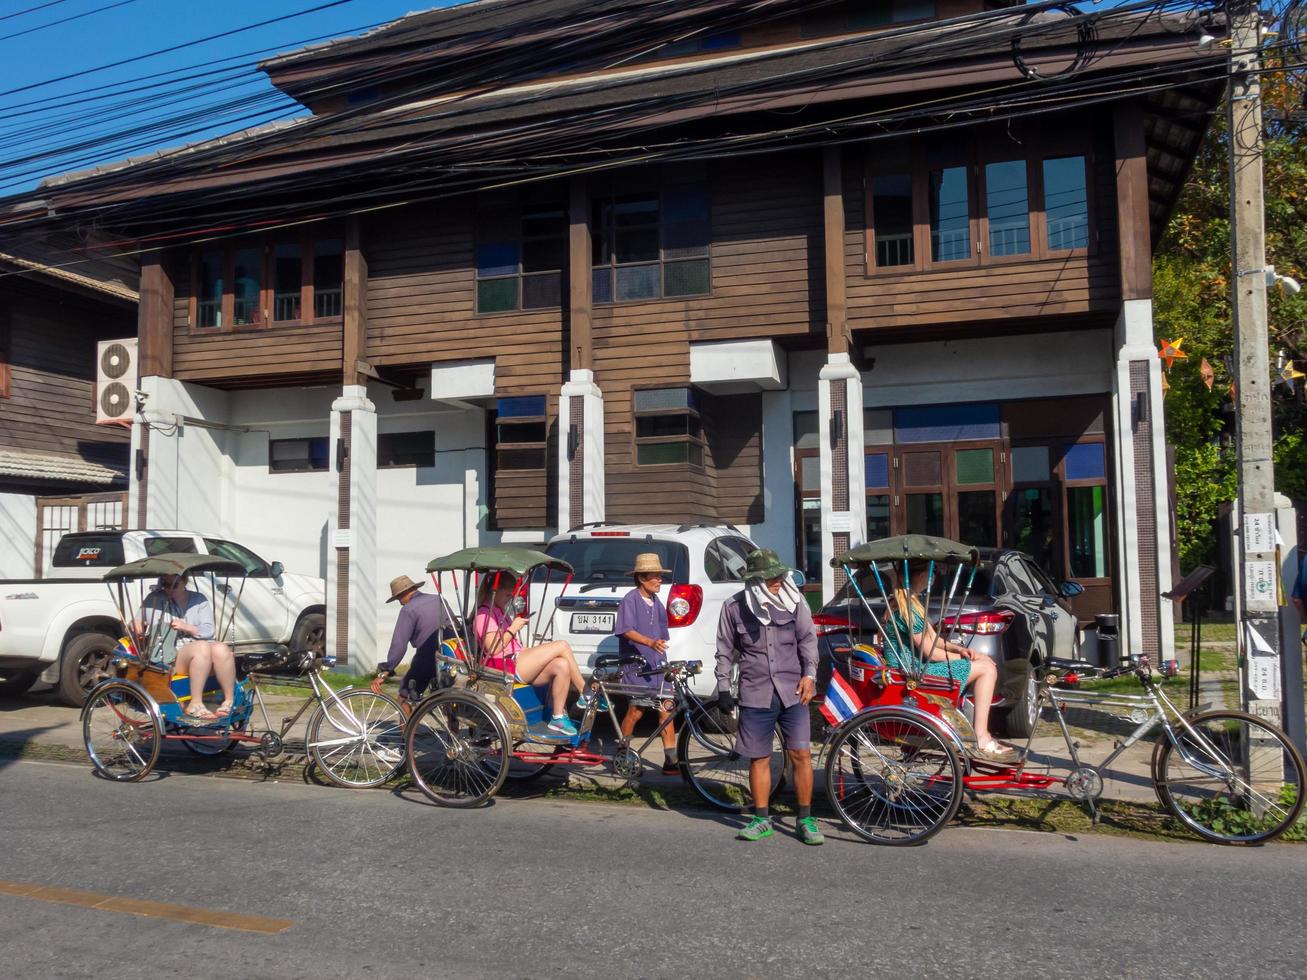 chiang mai thailand12 januari 2020passagiers driewieler is een oude driewieler die passagiers in het verleden bedient, tegenwoordig is dit een auto die wordt gebruikt voor toeristen die de stad Chiang Mai bezoeken. foto